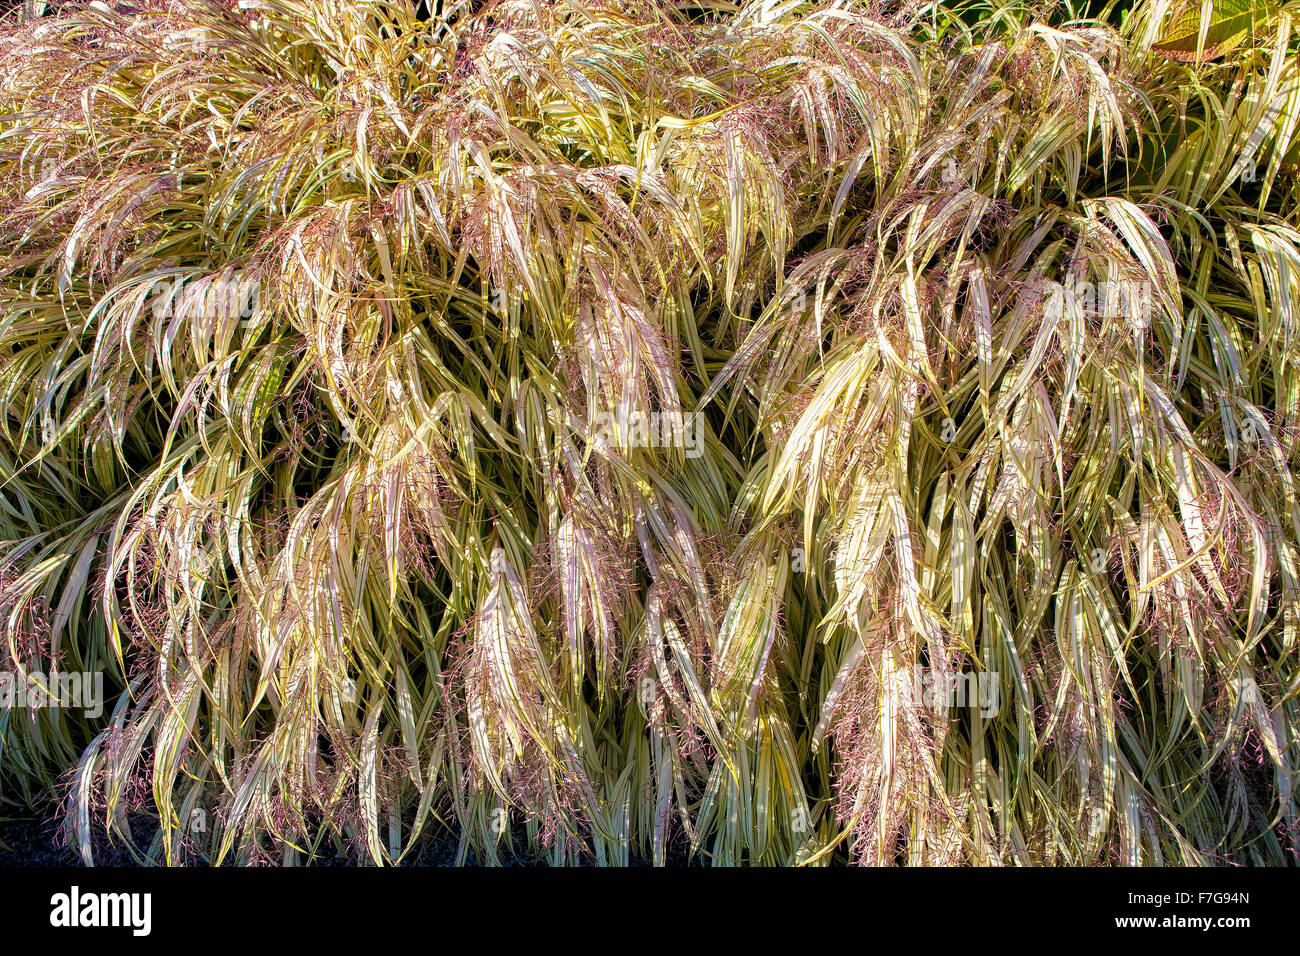 Giapponese di erba di argento, Miscanthus sinensis 'Variegatus' Eulalia, chiamato anche Maiden erba. Foto Stock